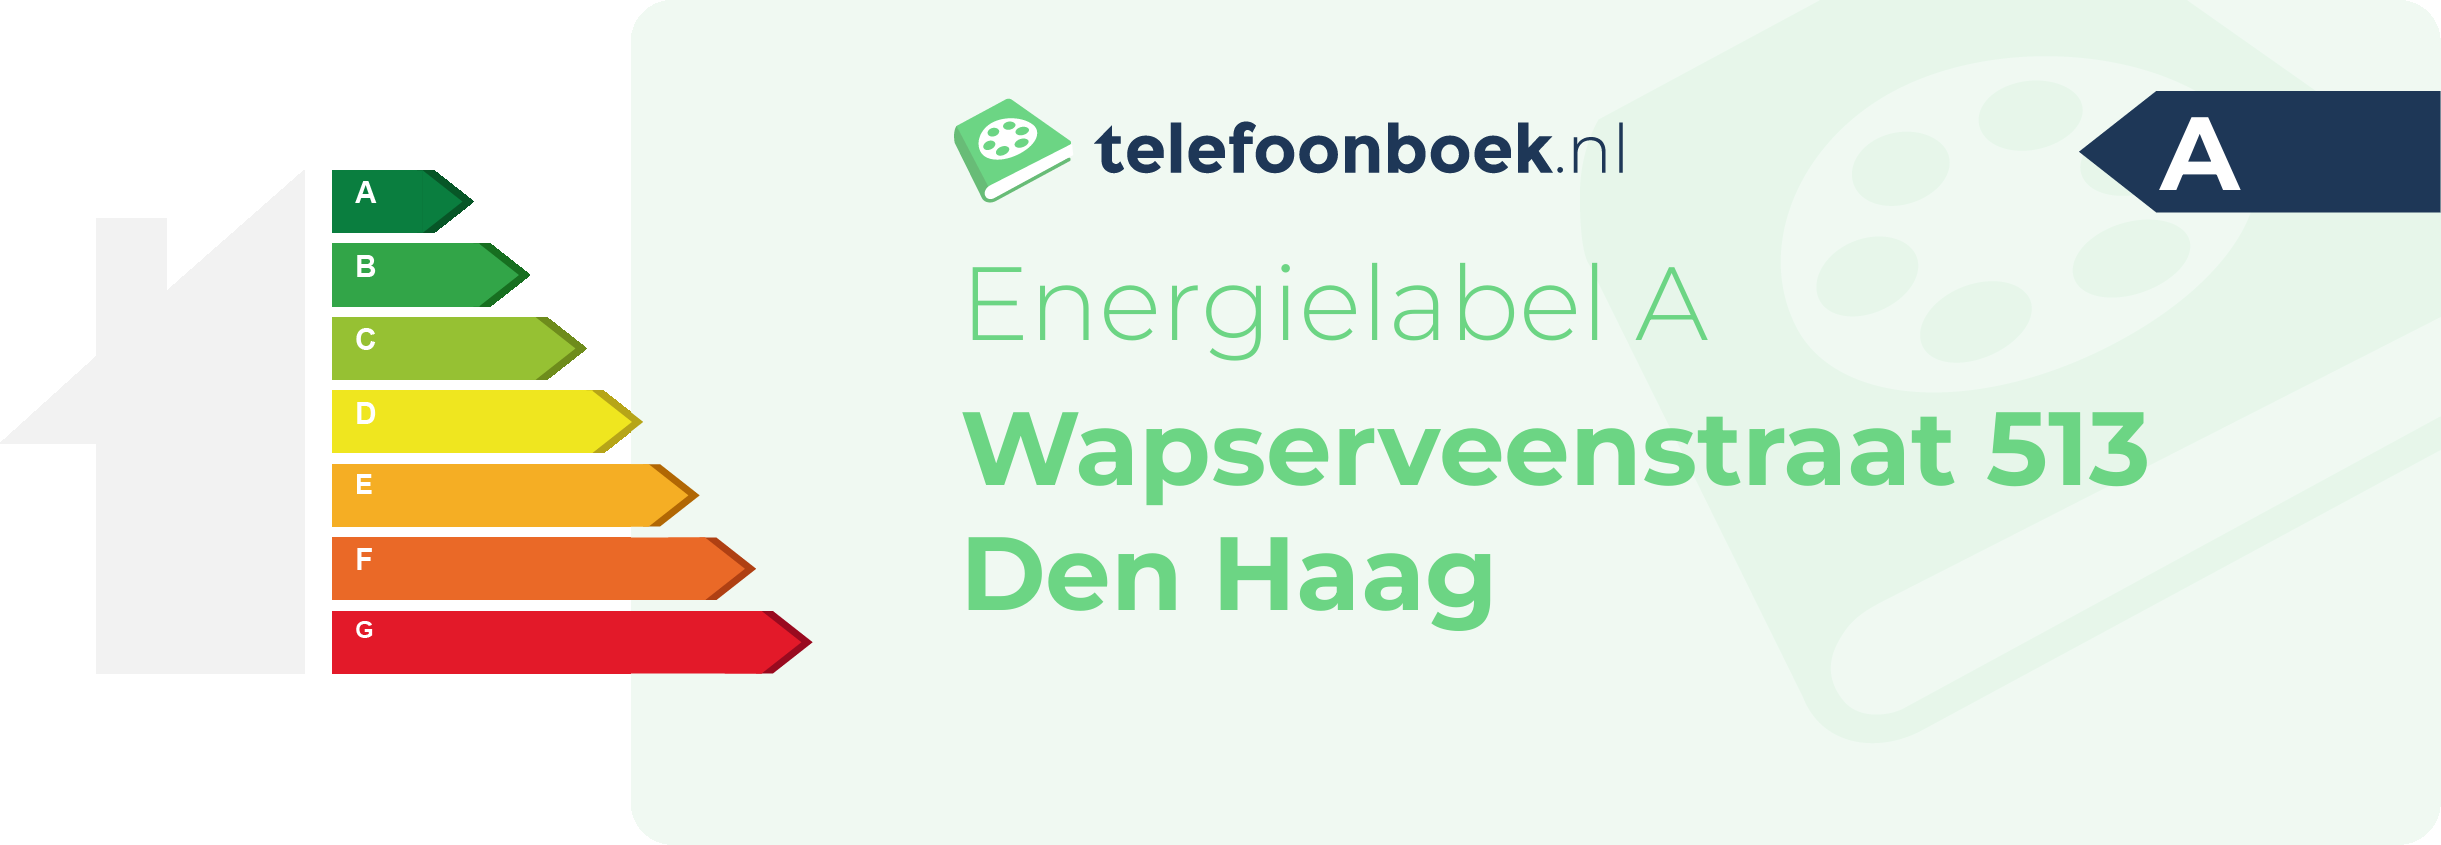 Energielabel Wapserveenstraat 513 Den Haag